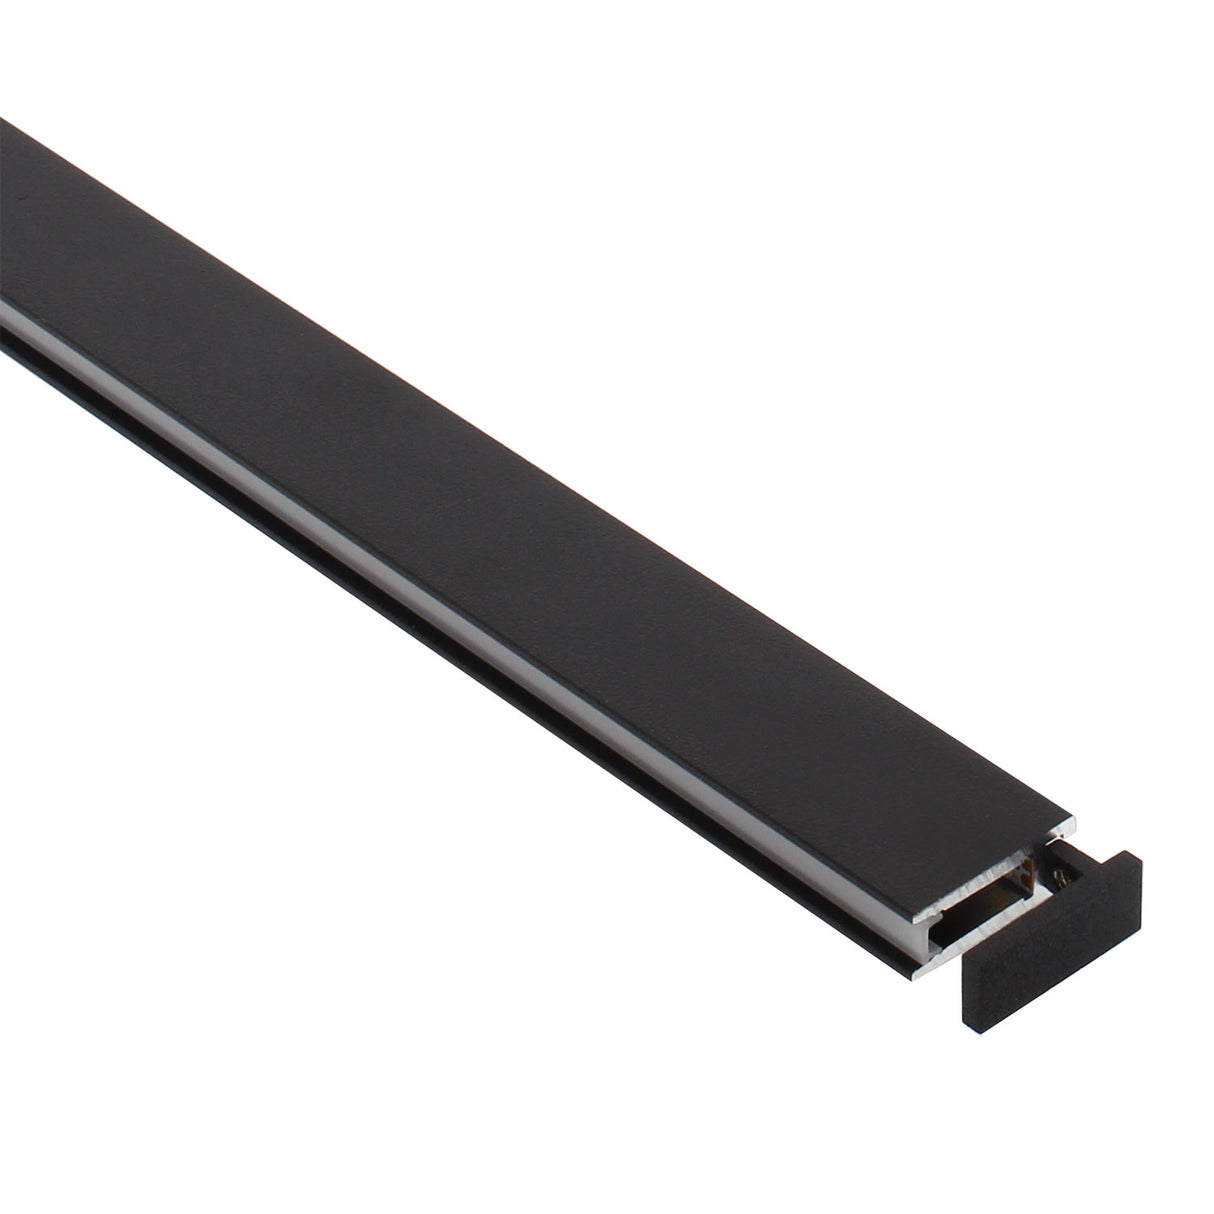 Perfil de aluminio lacado en color negro mate de 1 metro de longitud para instalaciones profesionales. Con el nuevo perfil PHANTER se consiguen impresionantes composiciones en iluminación suspendida que realzan cualquier espacio.